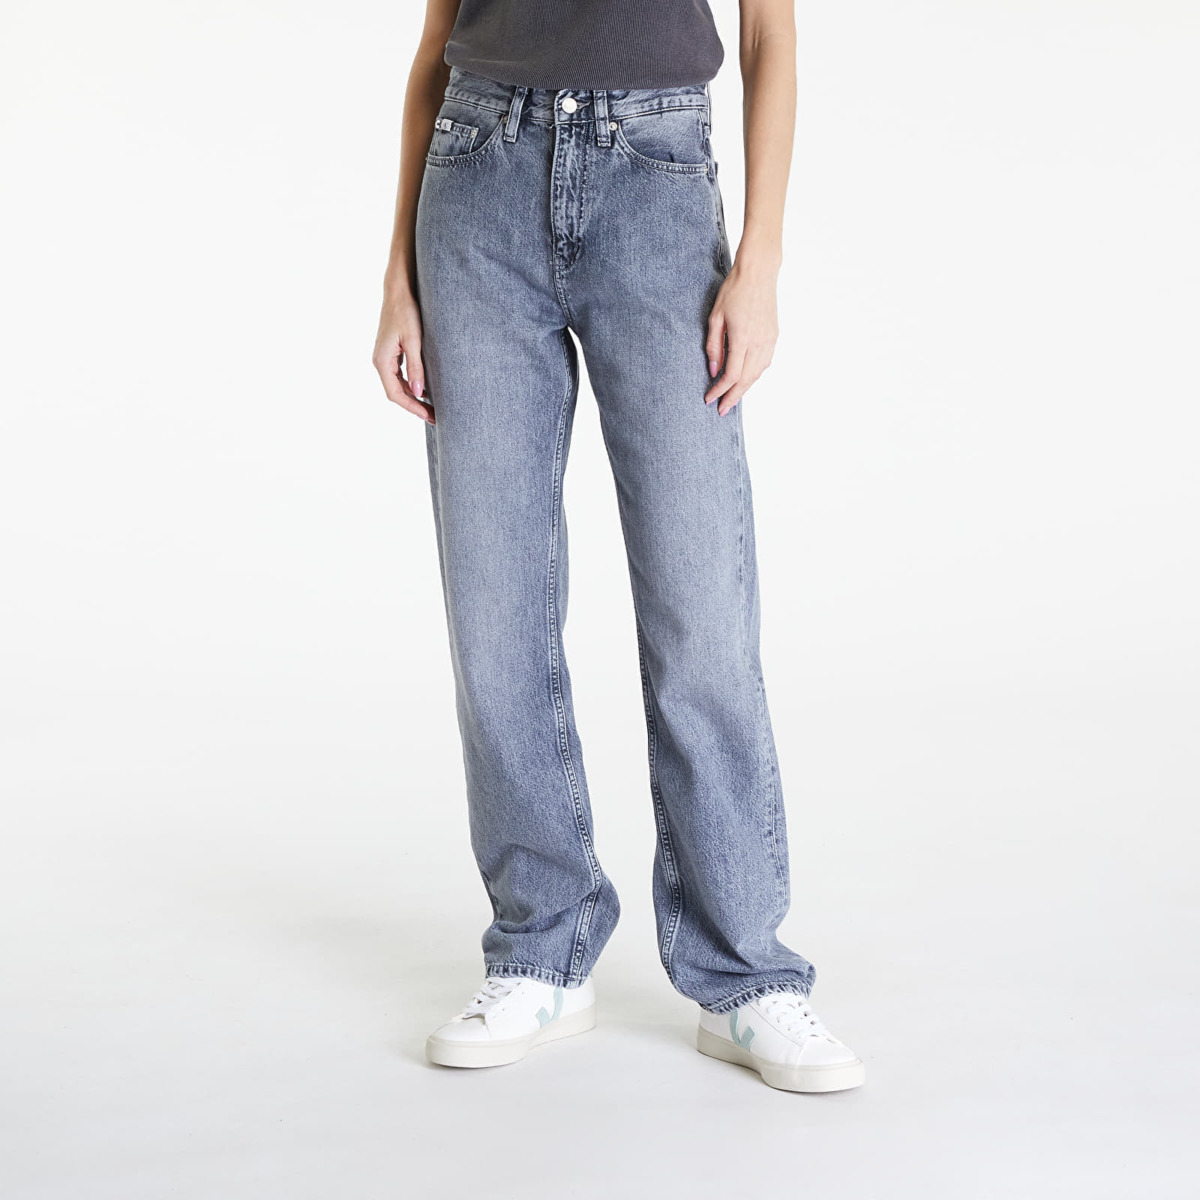 Calvin Klein Women Jeans Grey from Footshop GOOFASH